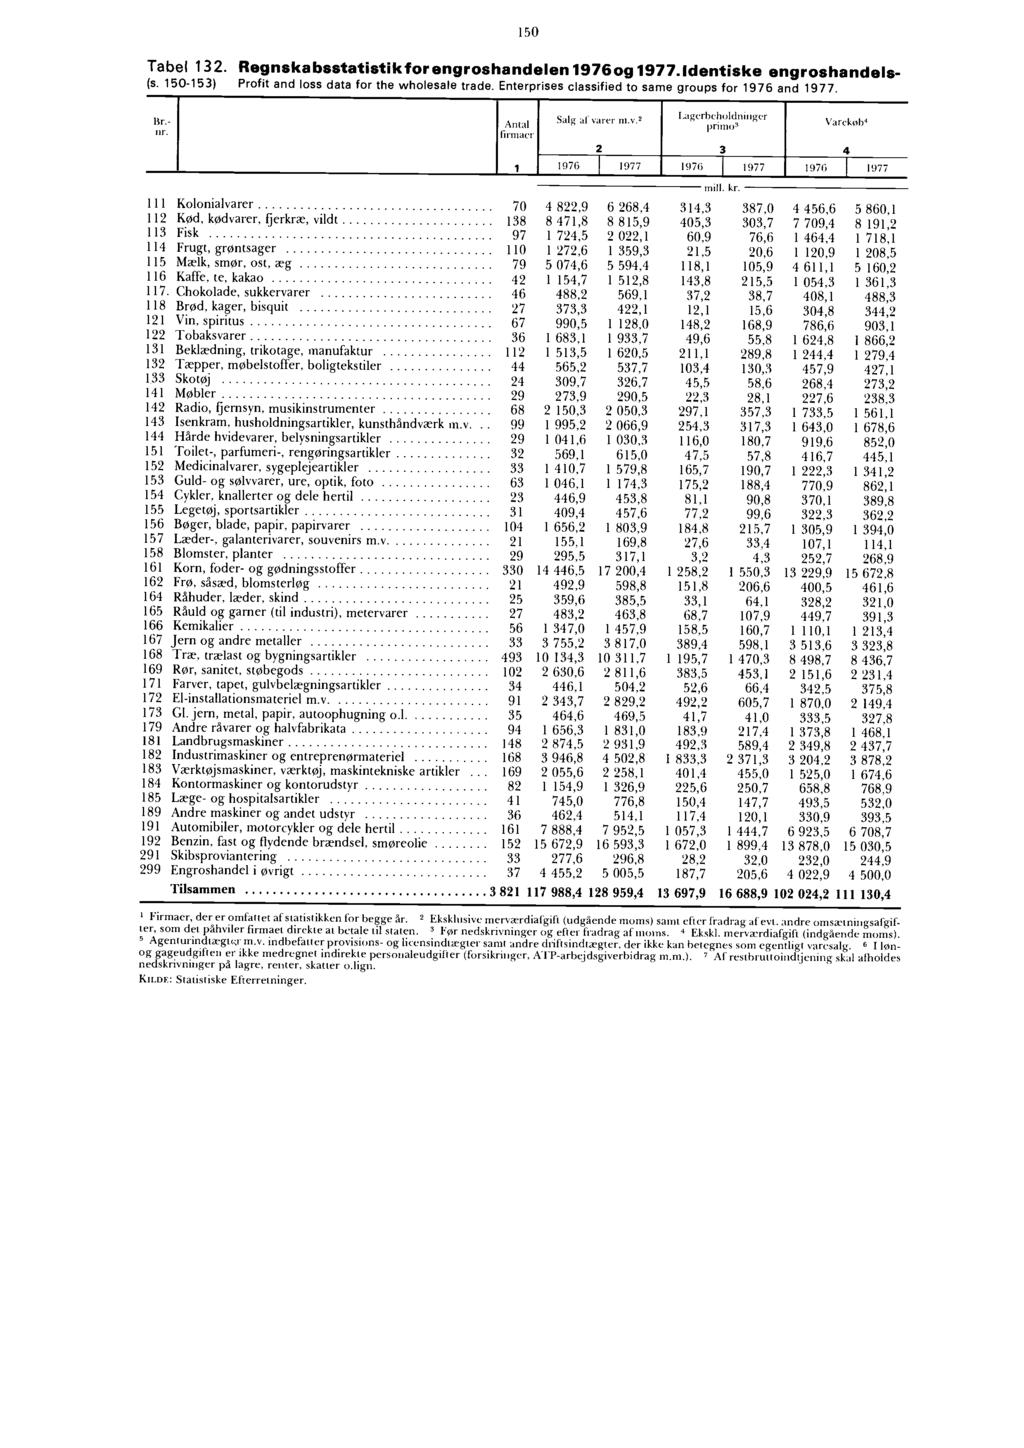 150 Tabel 132. Regnskabsstatistikforengroshandelen 1976 og 1977. Identiske engroshandels- (s. 150-153) Profit and loss data for the wholesale trade.